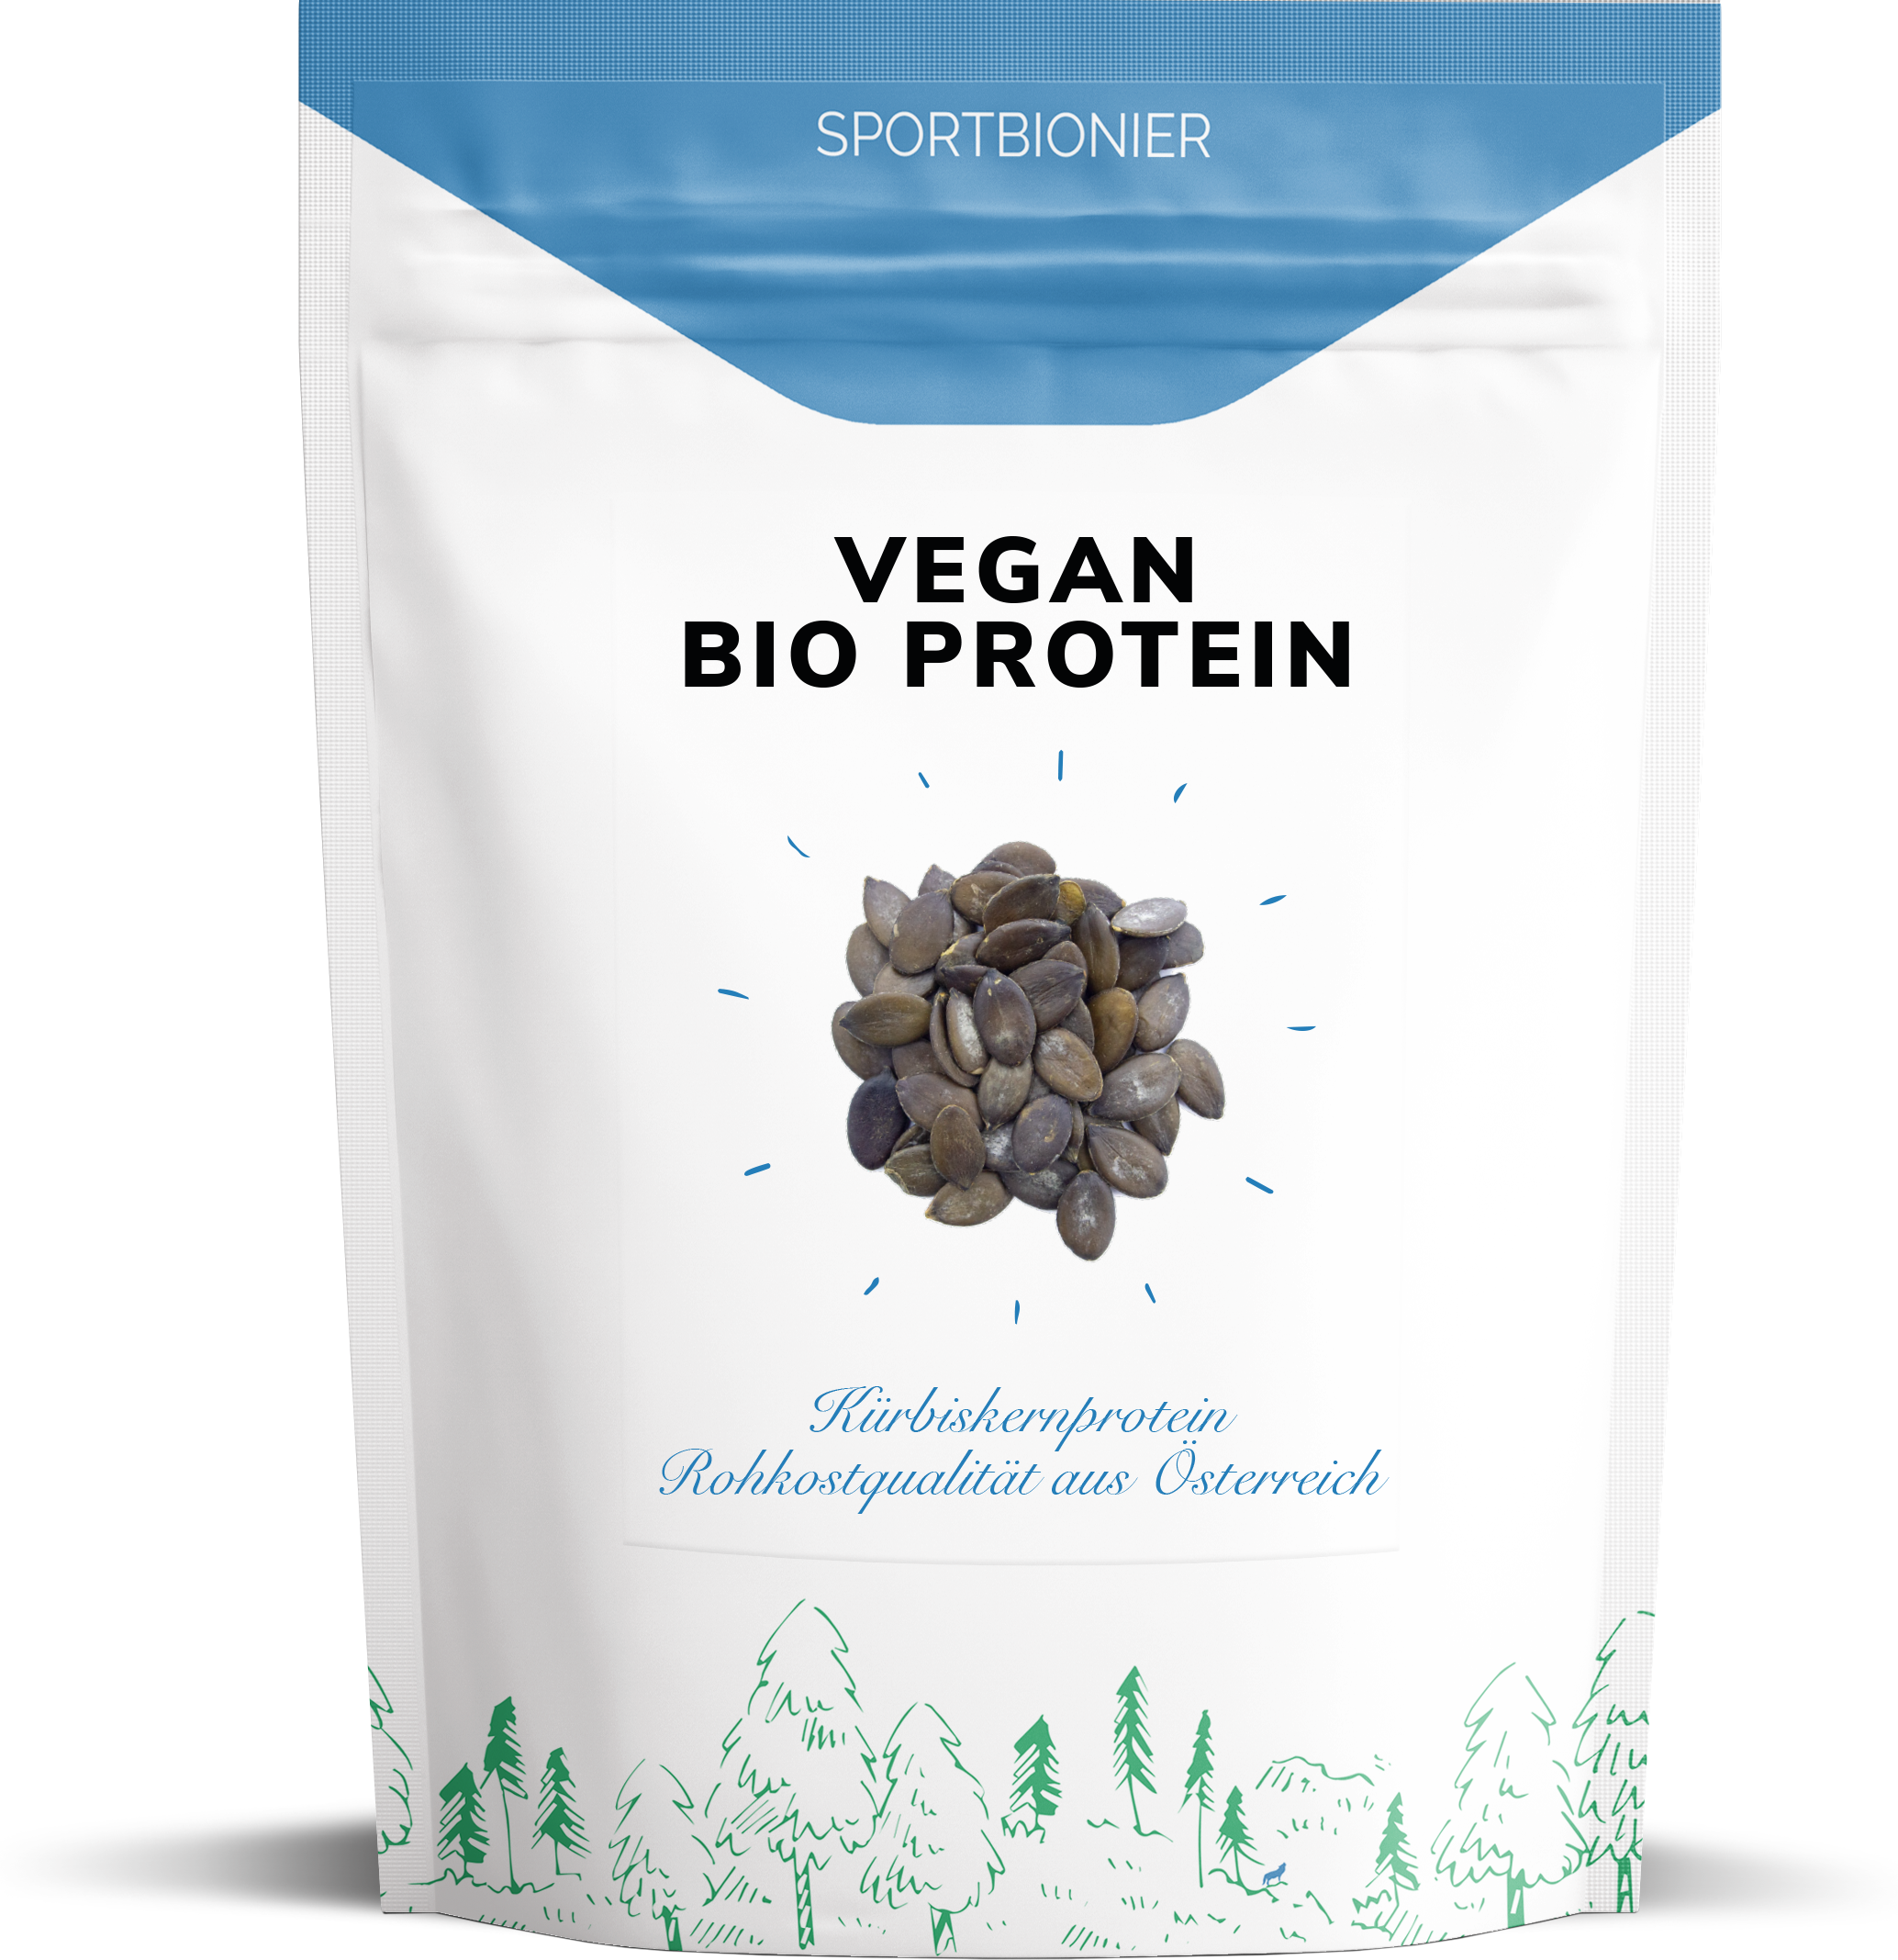 NEU! Sportbionier Bio Vegan Protein aus Kürbiskernen 750g